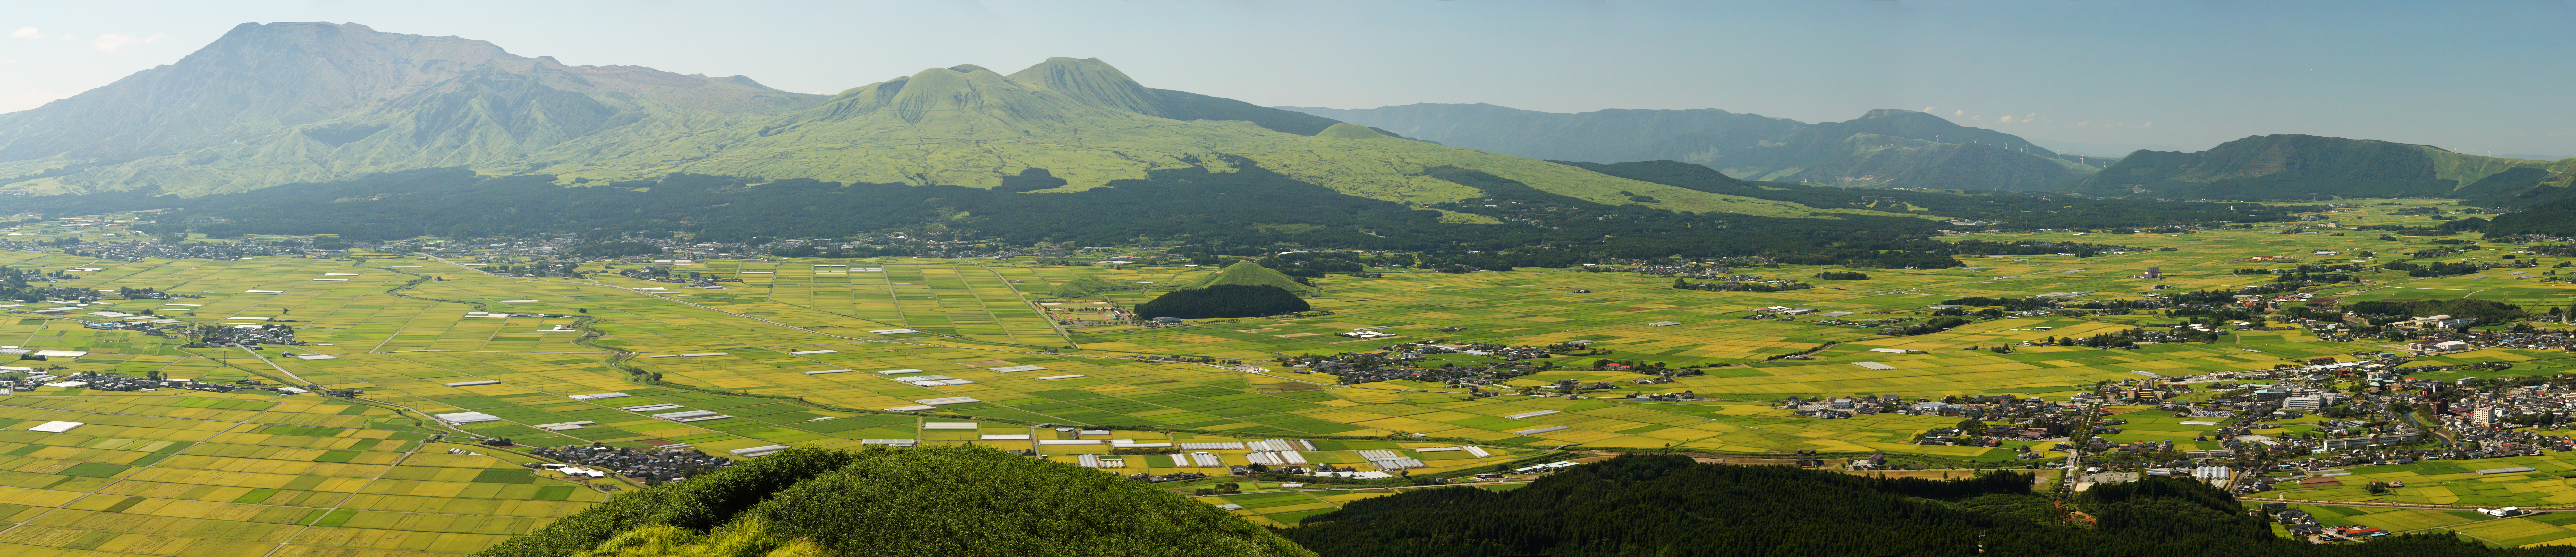 fotografia, materiale, libero il panorama, dipinga, fotografia di scorta,Aso vista intera, campo di riso, vulcano, Un vulcano attivo, Mt. Aso